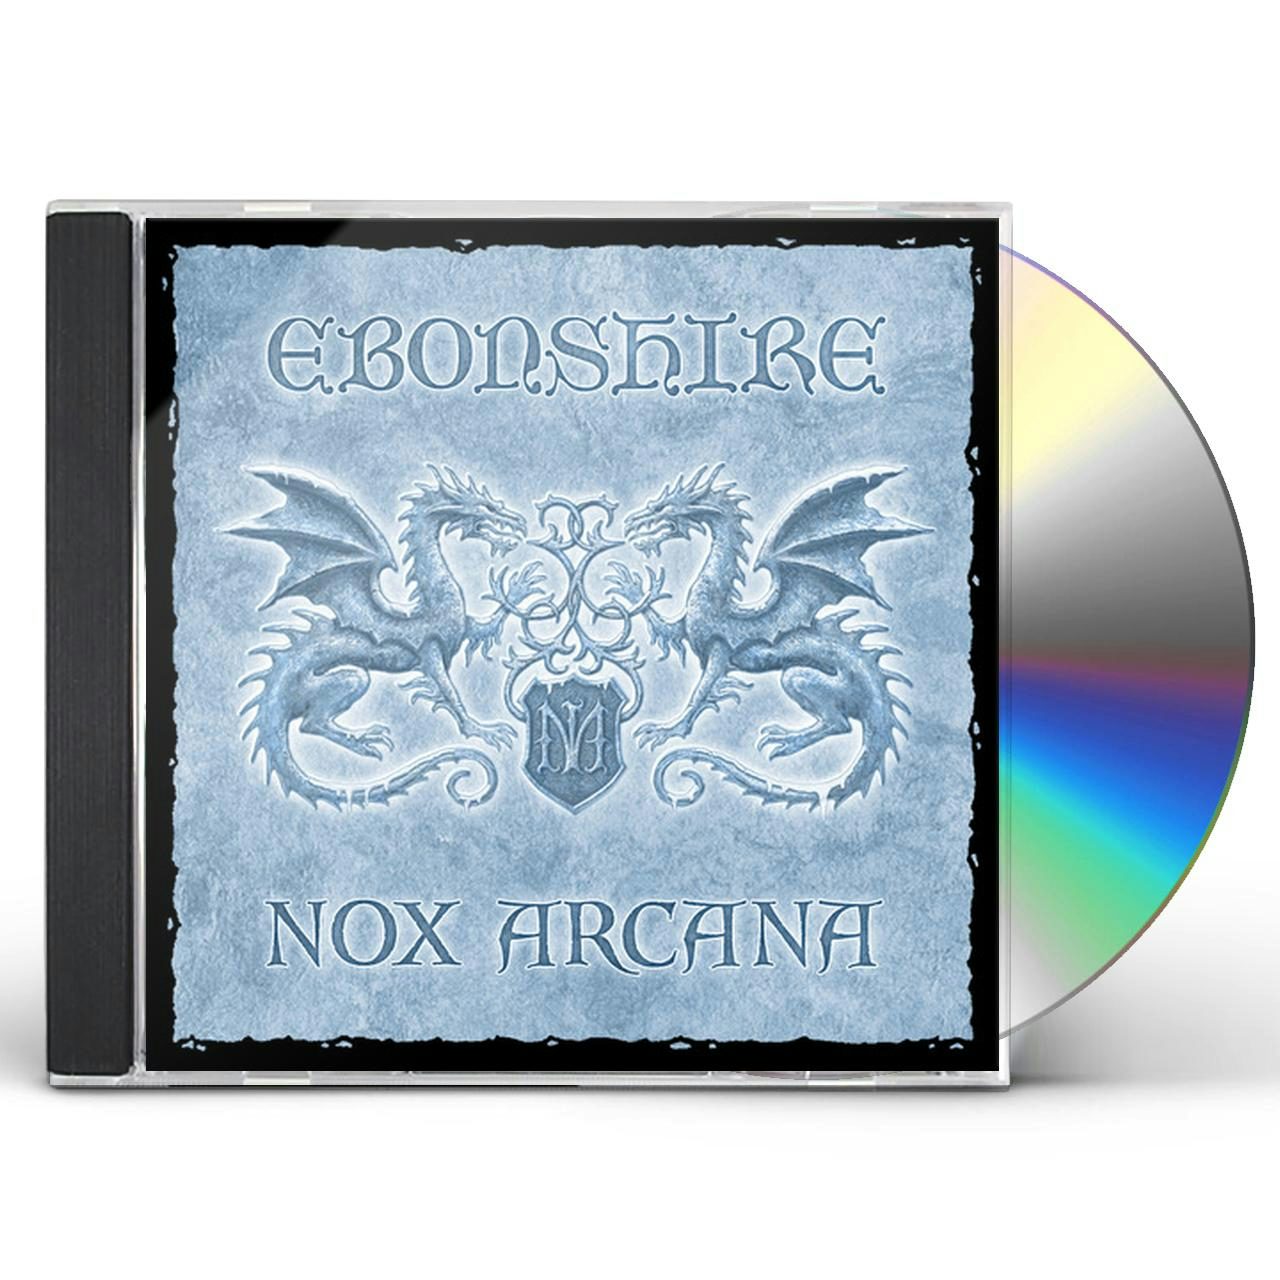 nox arcana ebonshire album